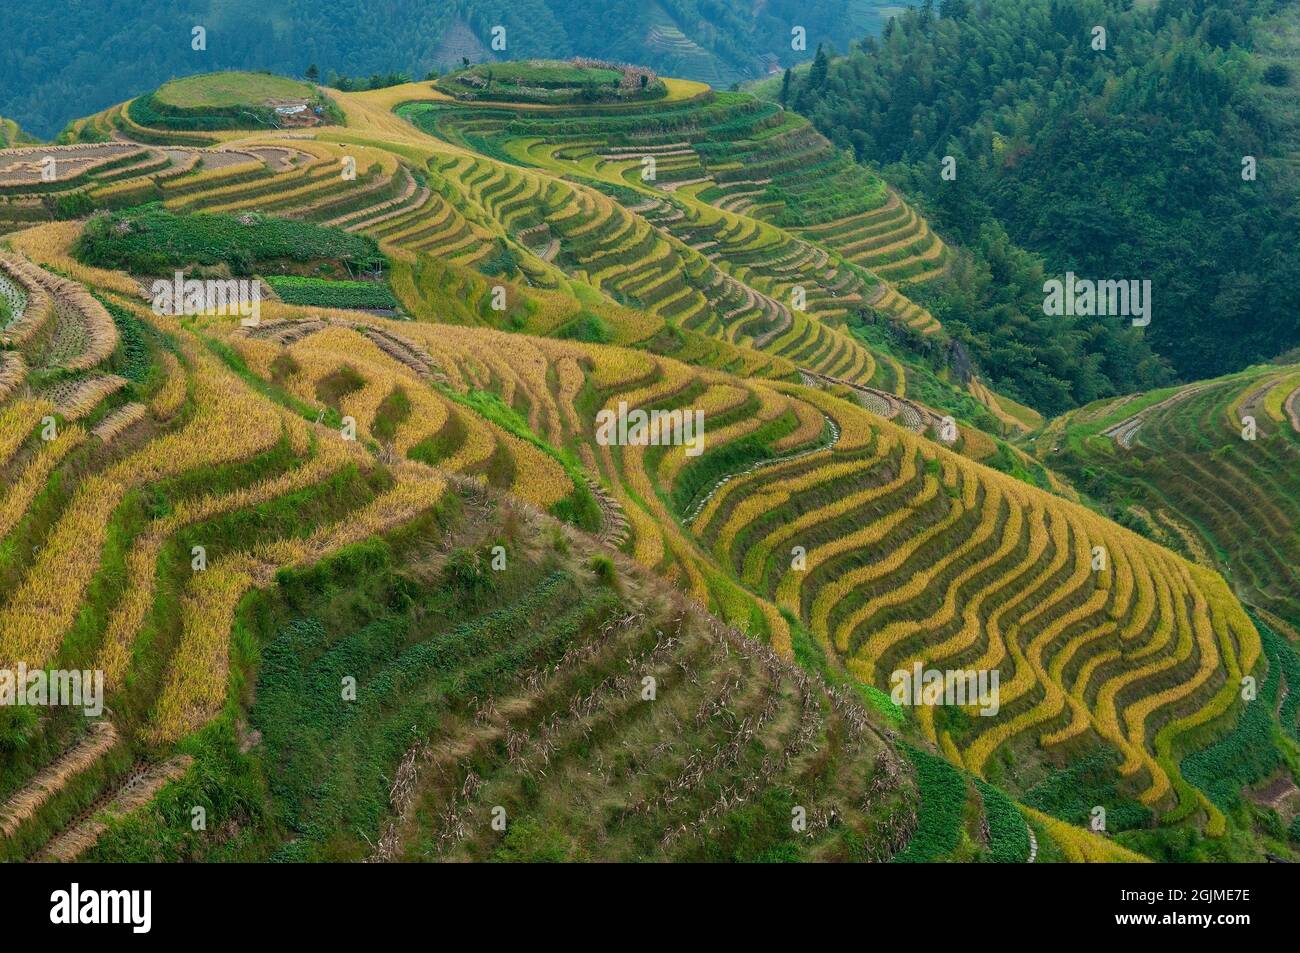 Ping d'un terrain en terrasse pendant la saison de récolte situé dans la zone panoramique des champs en terrasse de Longji, comté de Longsheng, province de Guangxi, Chine. Banque D'Images